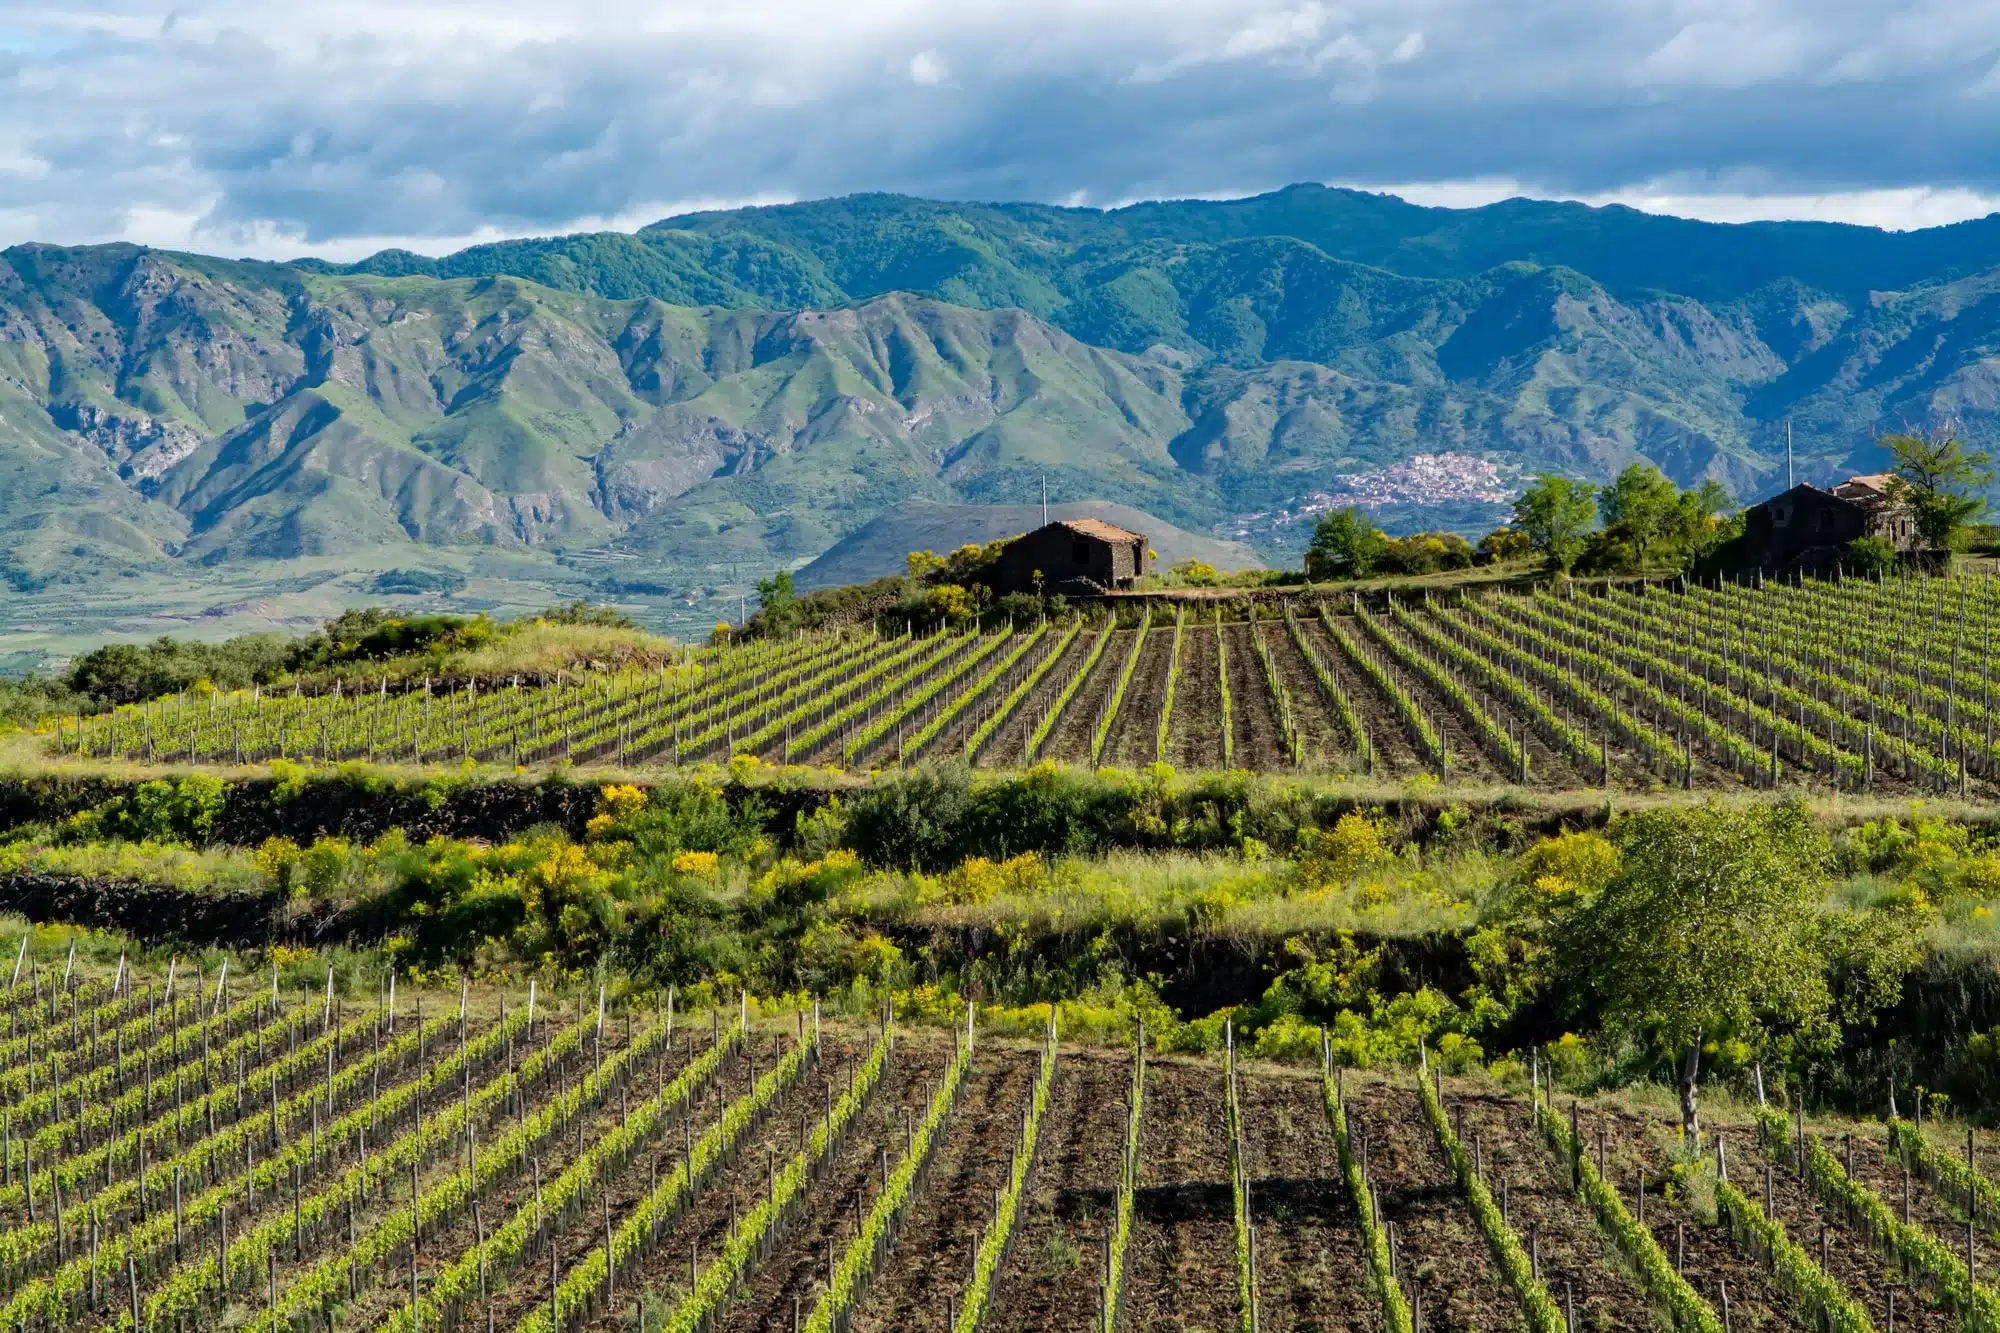 Vine fra Sicilien er et af vore fokuspunkter og understreger så klart Italiens enorme varietet inden for vindyrkning